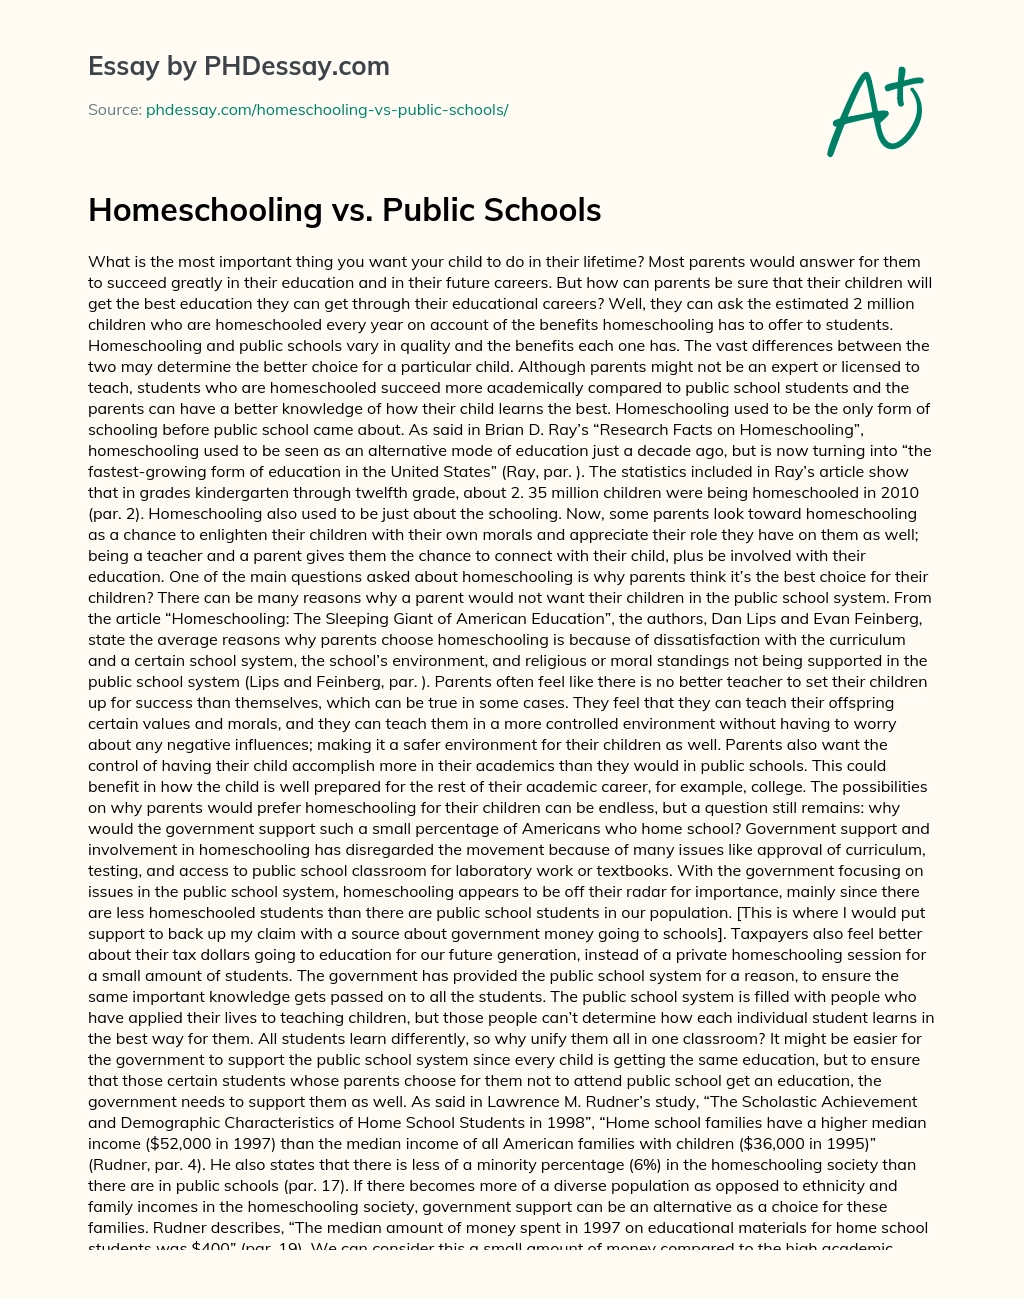 Homeschooling vs. Public Schools essay